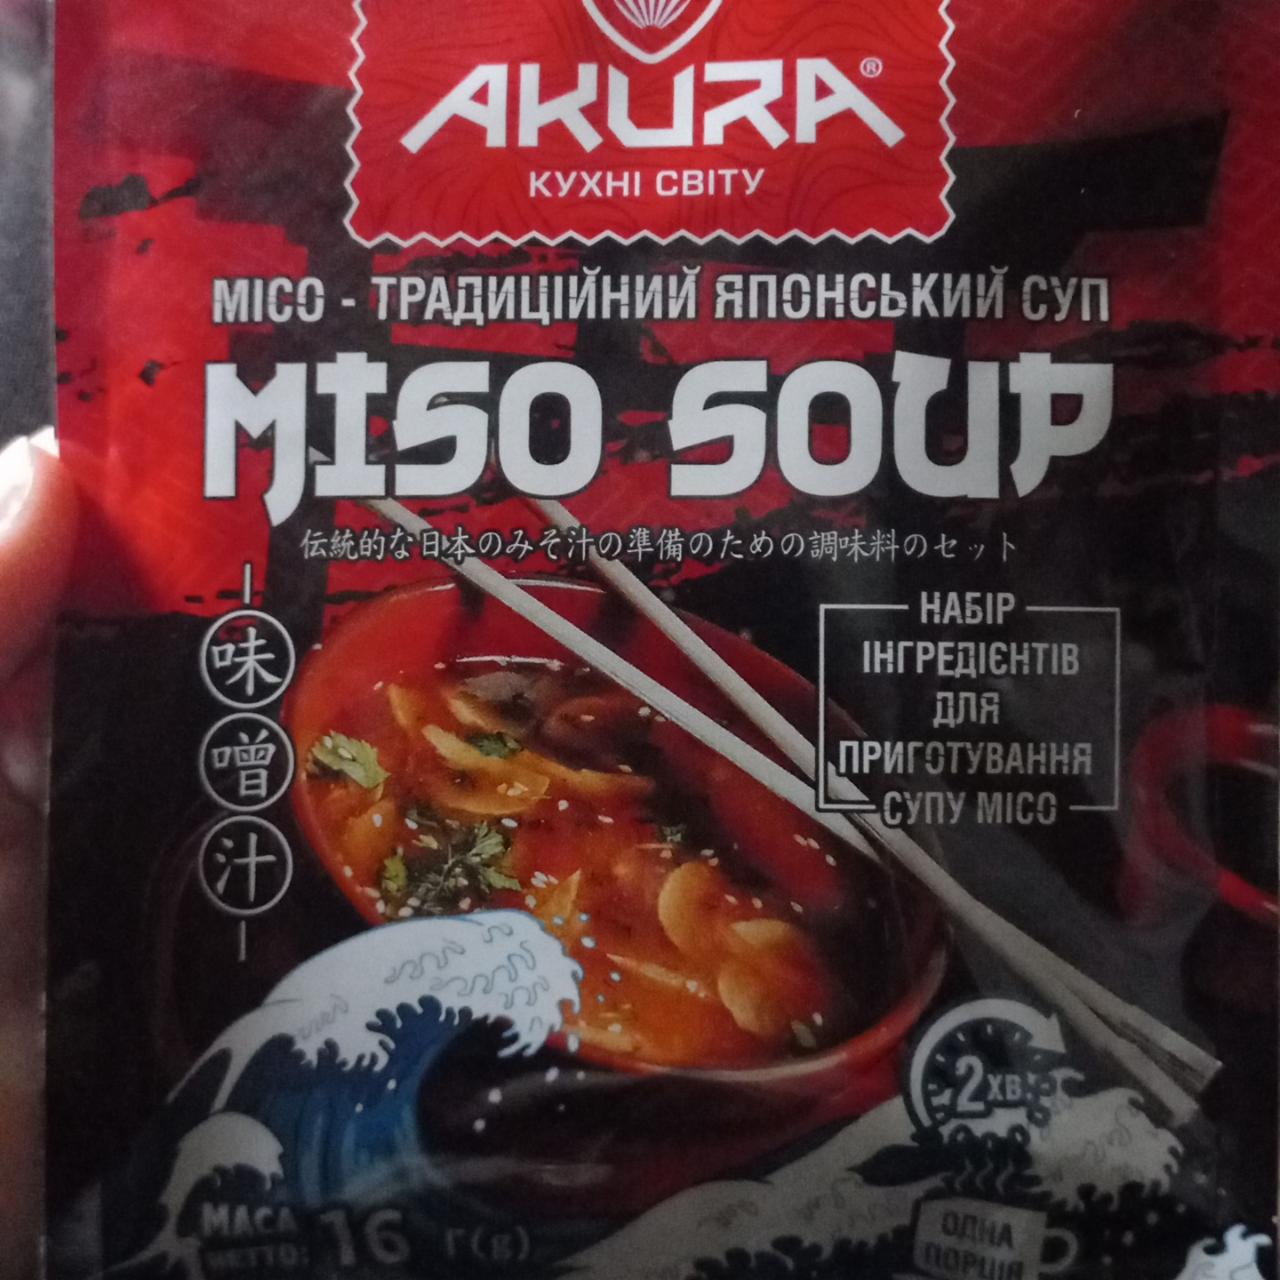 Фото - Суп японский традиционный Місо Miso Soup Akura